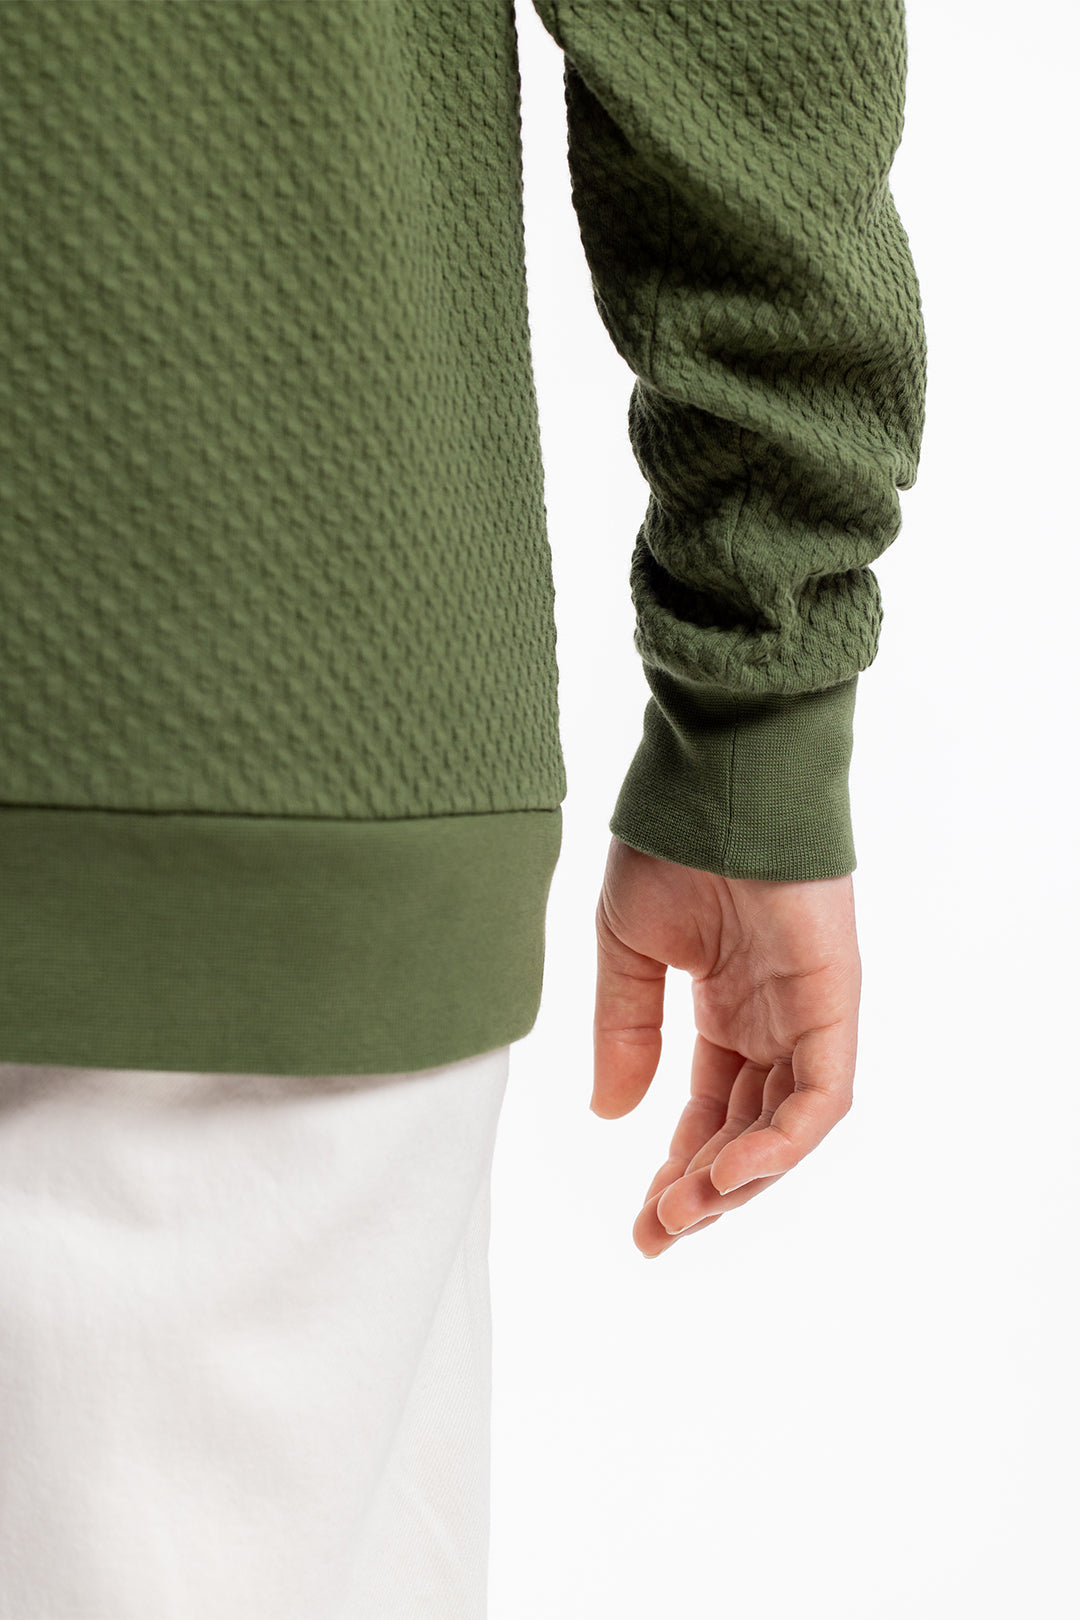 Grüner Sweater Waffel aus 100% Bio Baumwolle von Rotholz